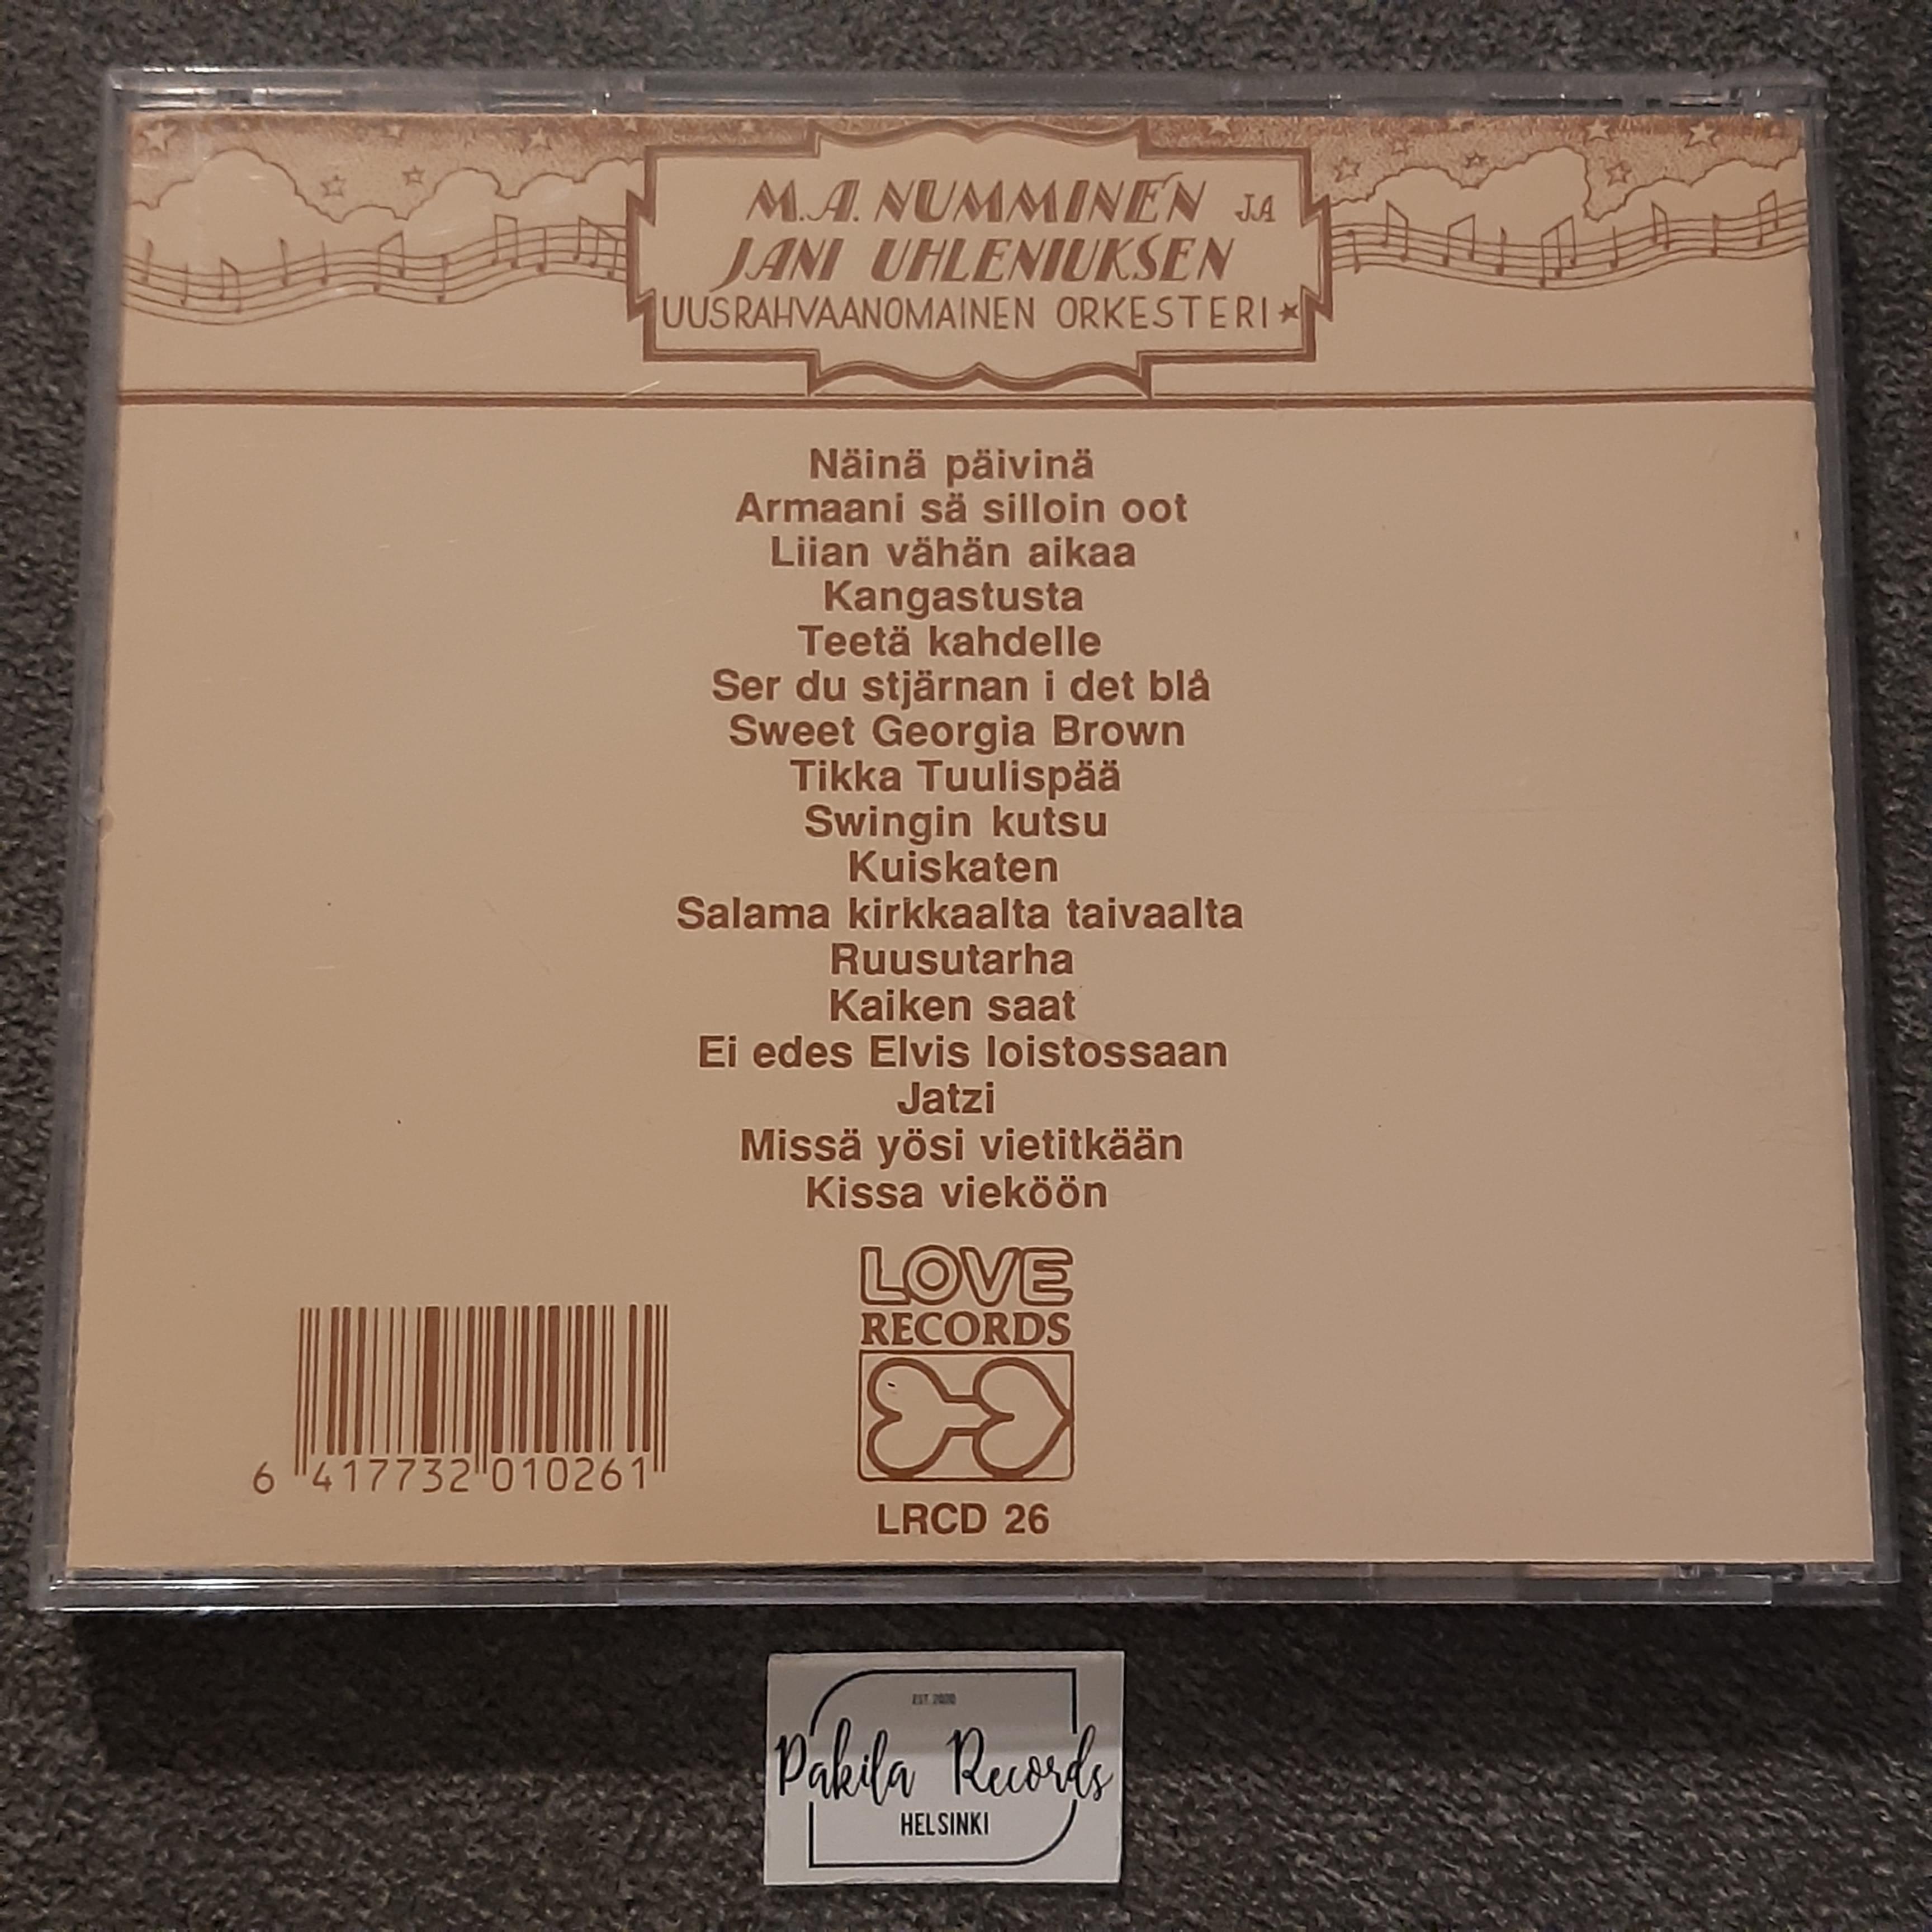 M.A. Numminen - Swingin kutsu - CD (käytetty)